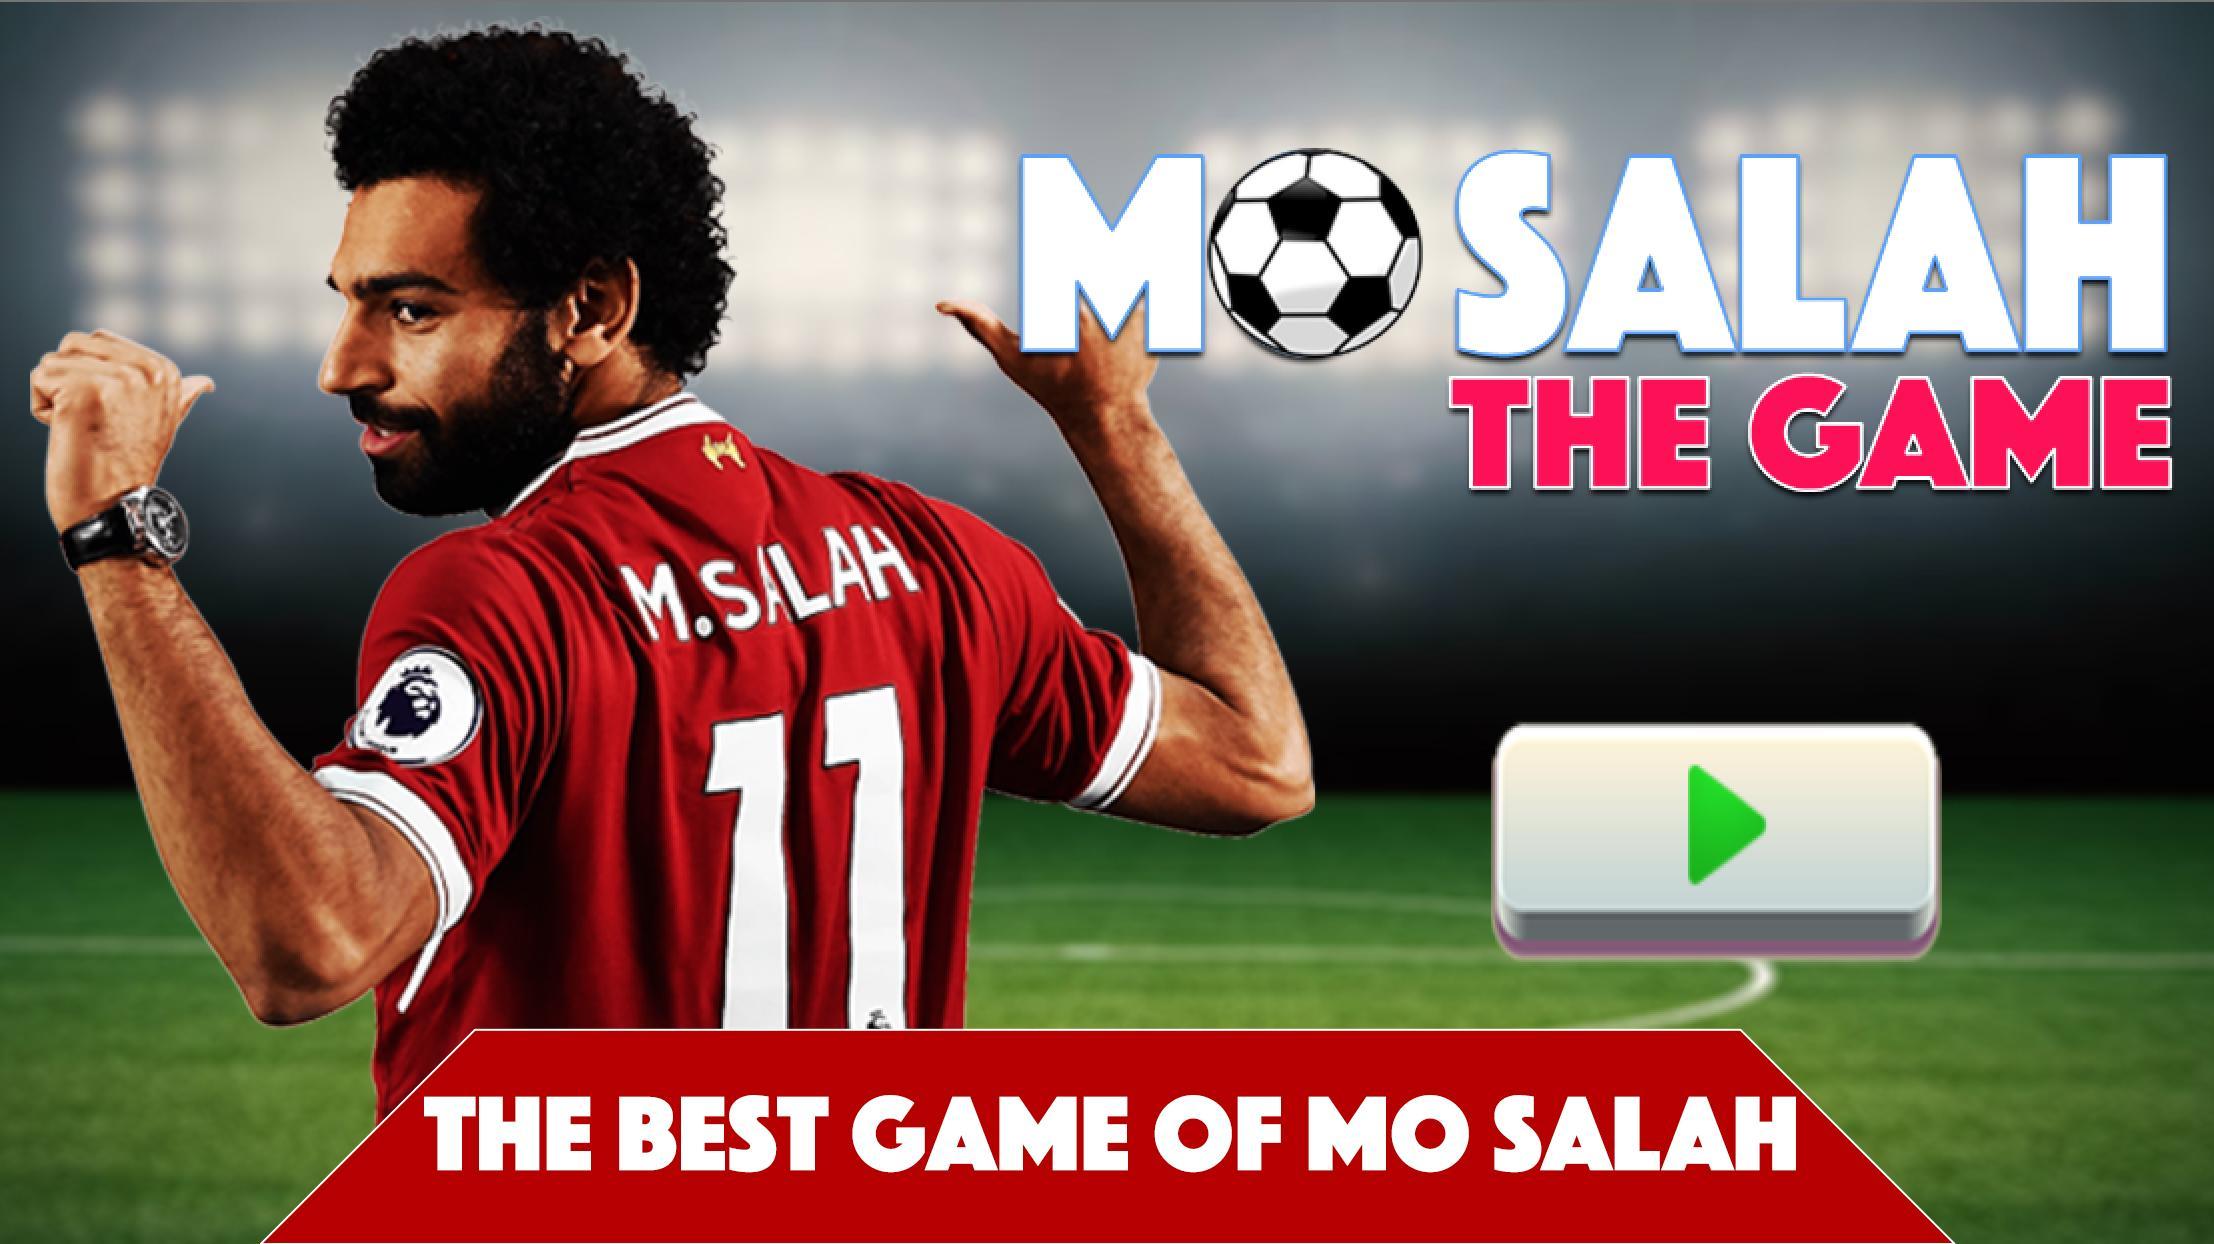 محمد صلاح : أحسن لعبة لكرة القدم for Android - APK Download